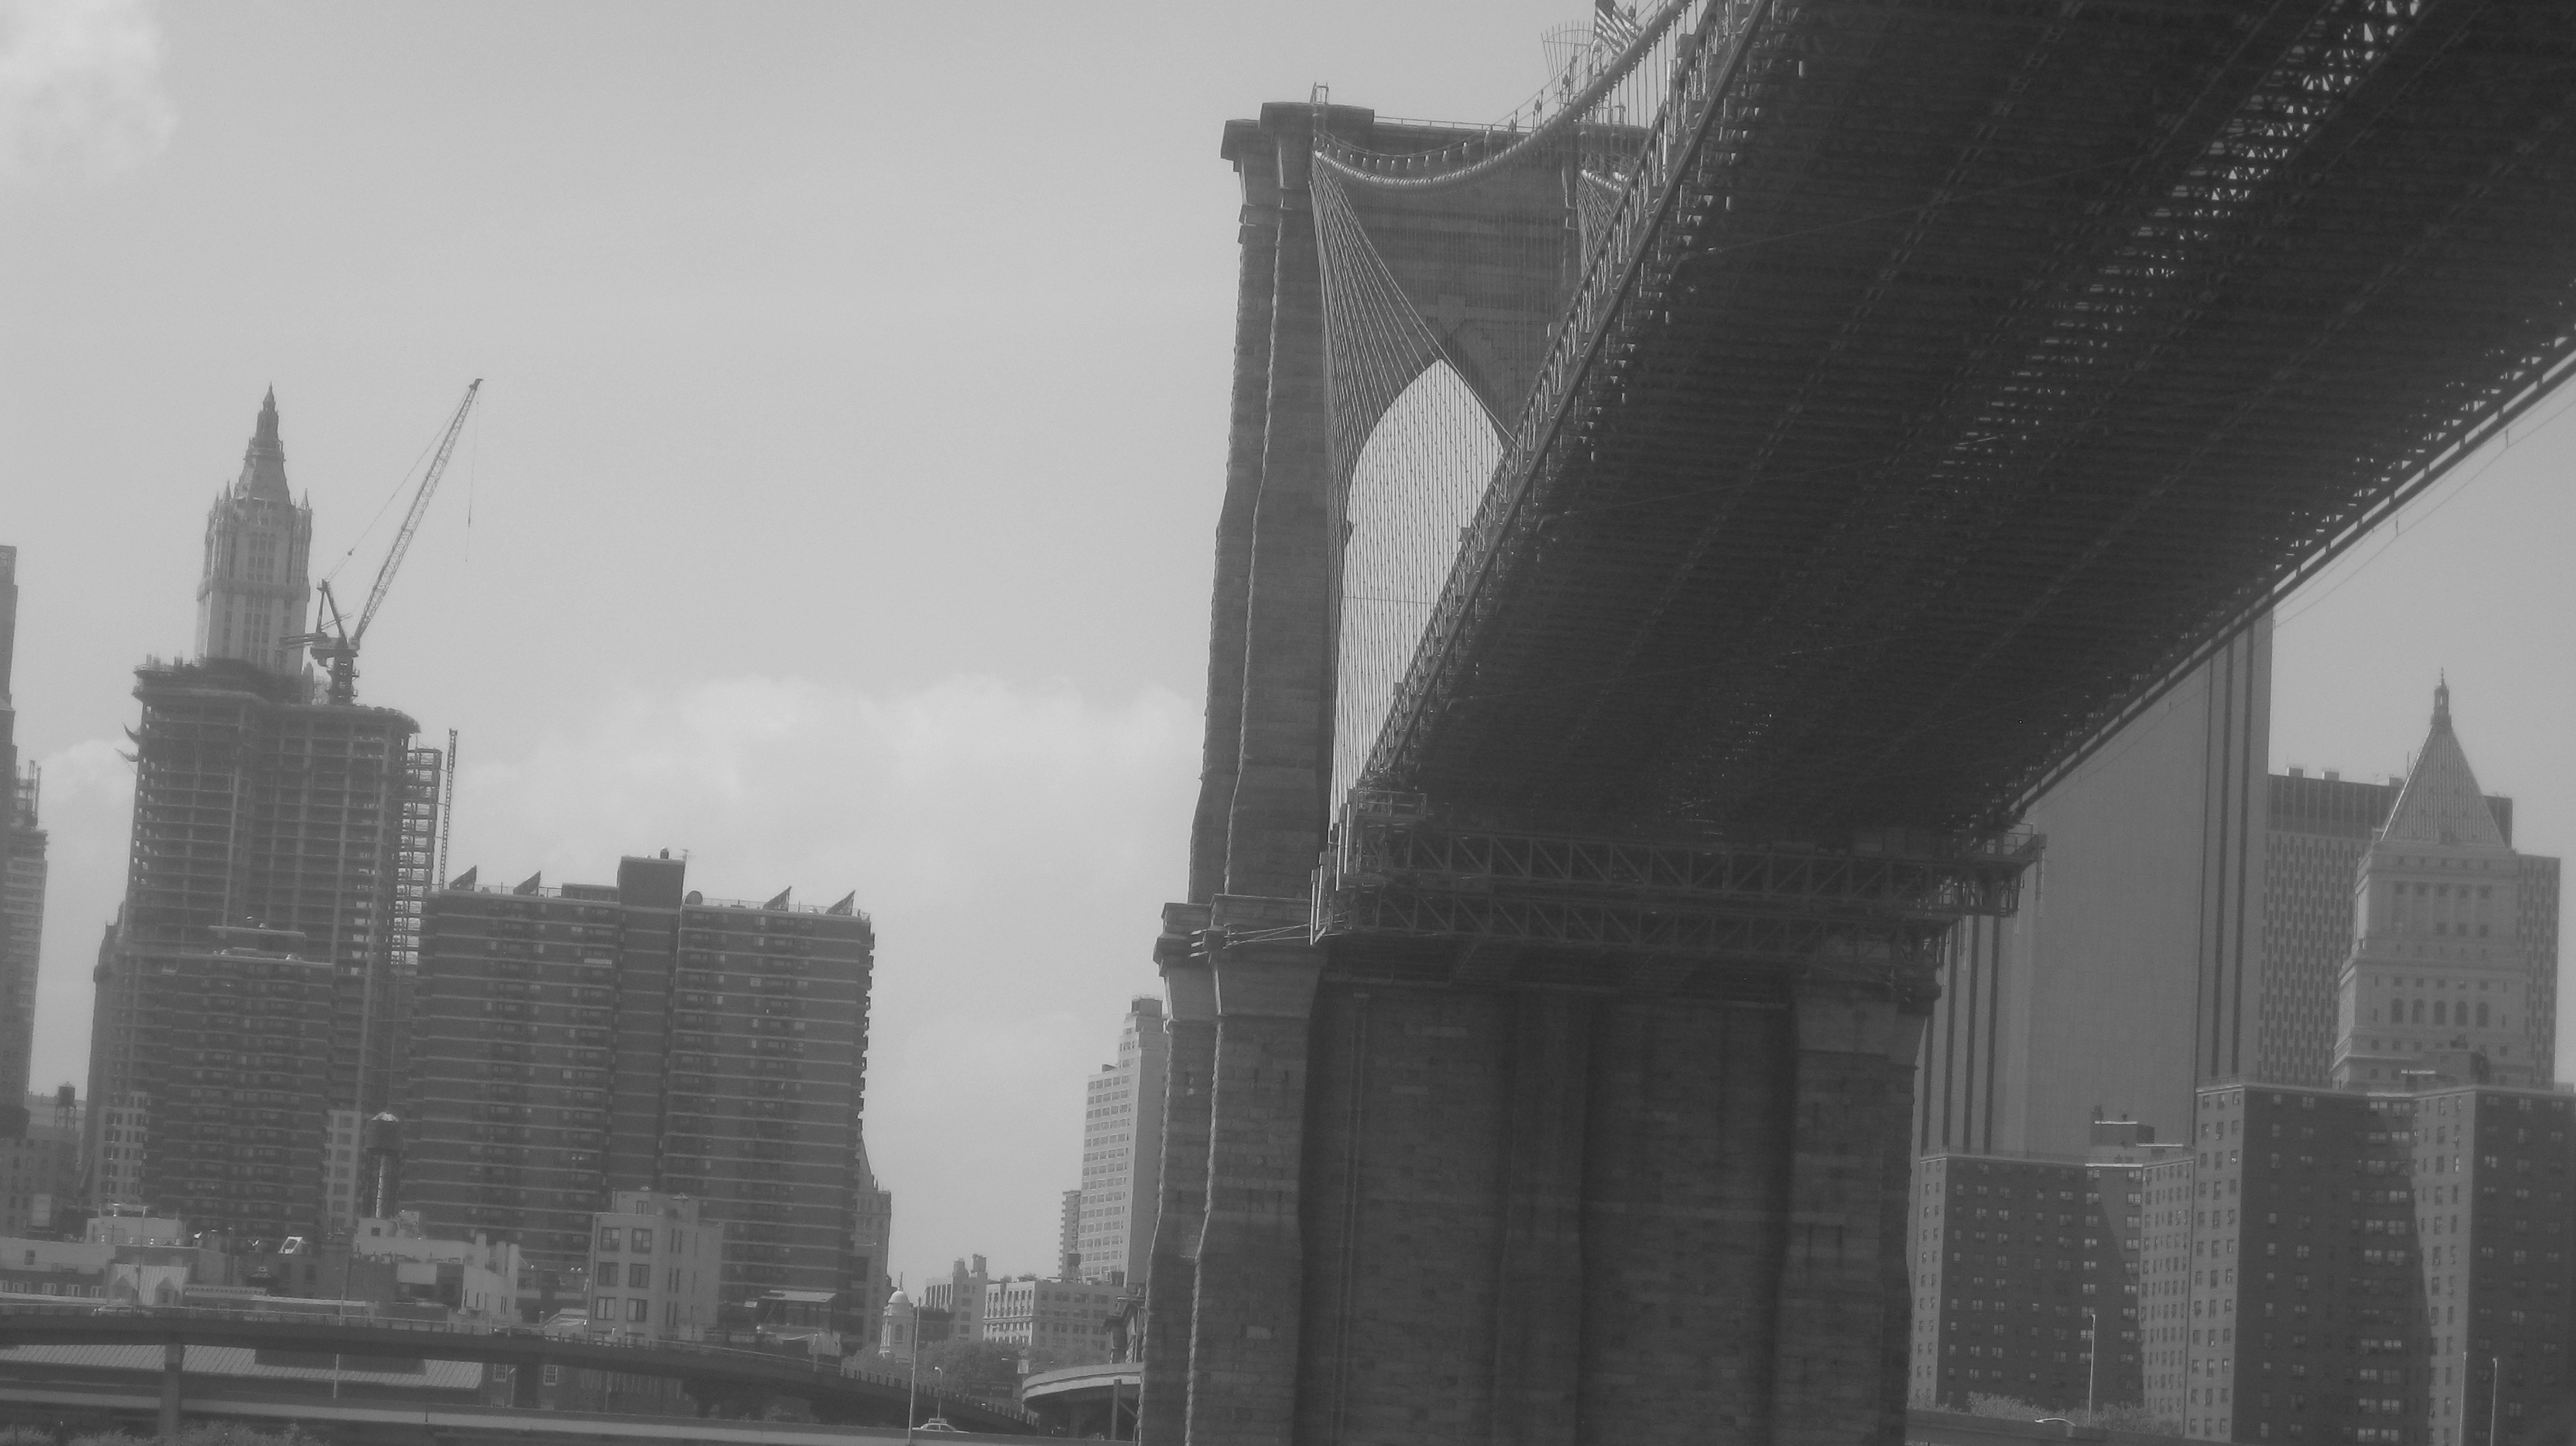 bridges, New York City, cities - desktop wallpaper